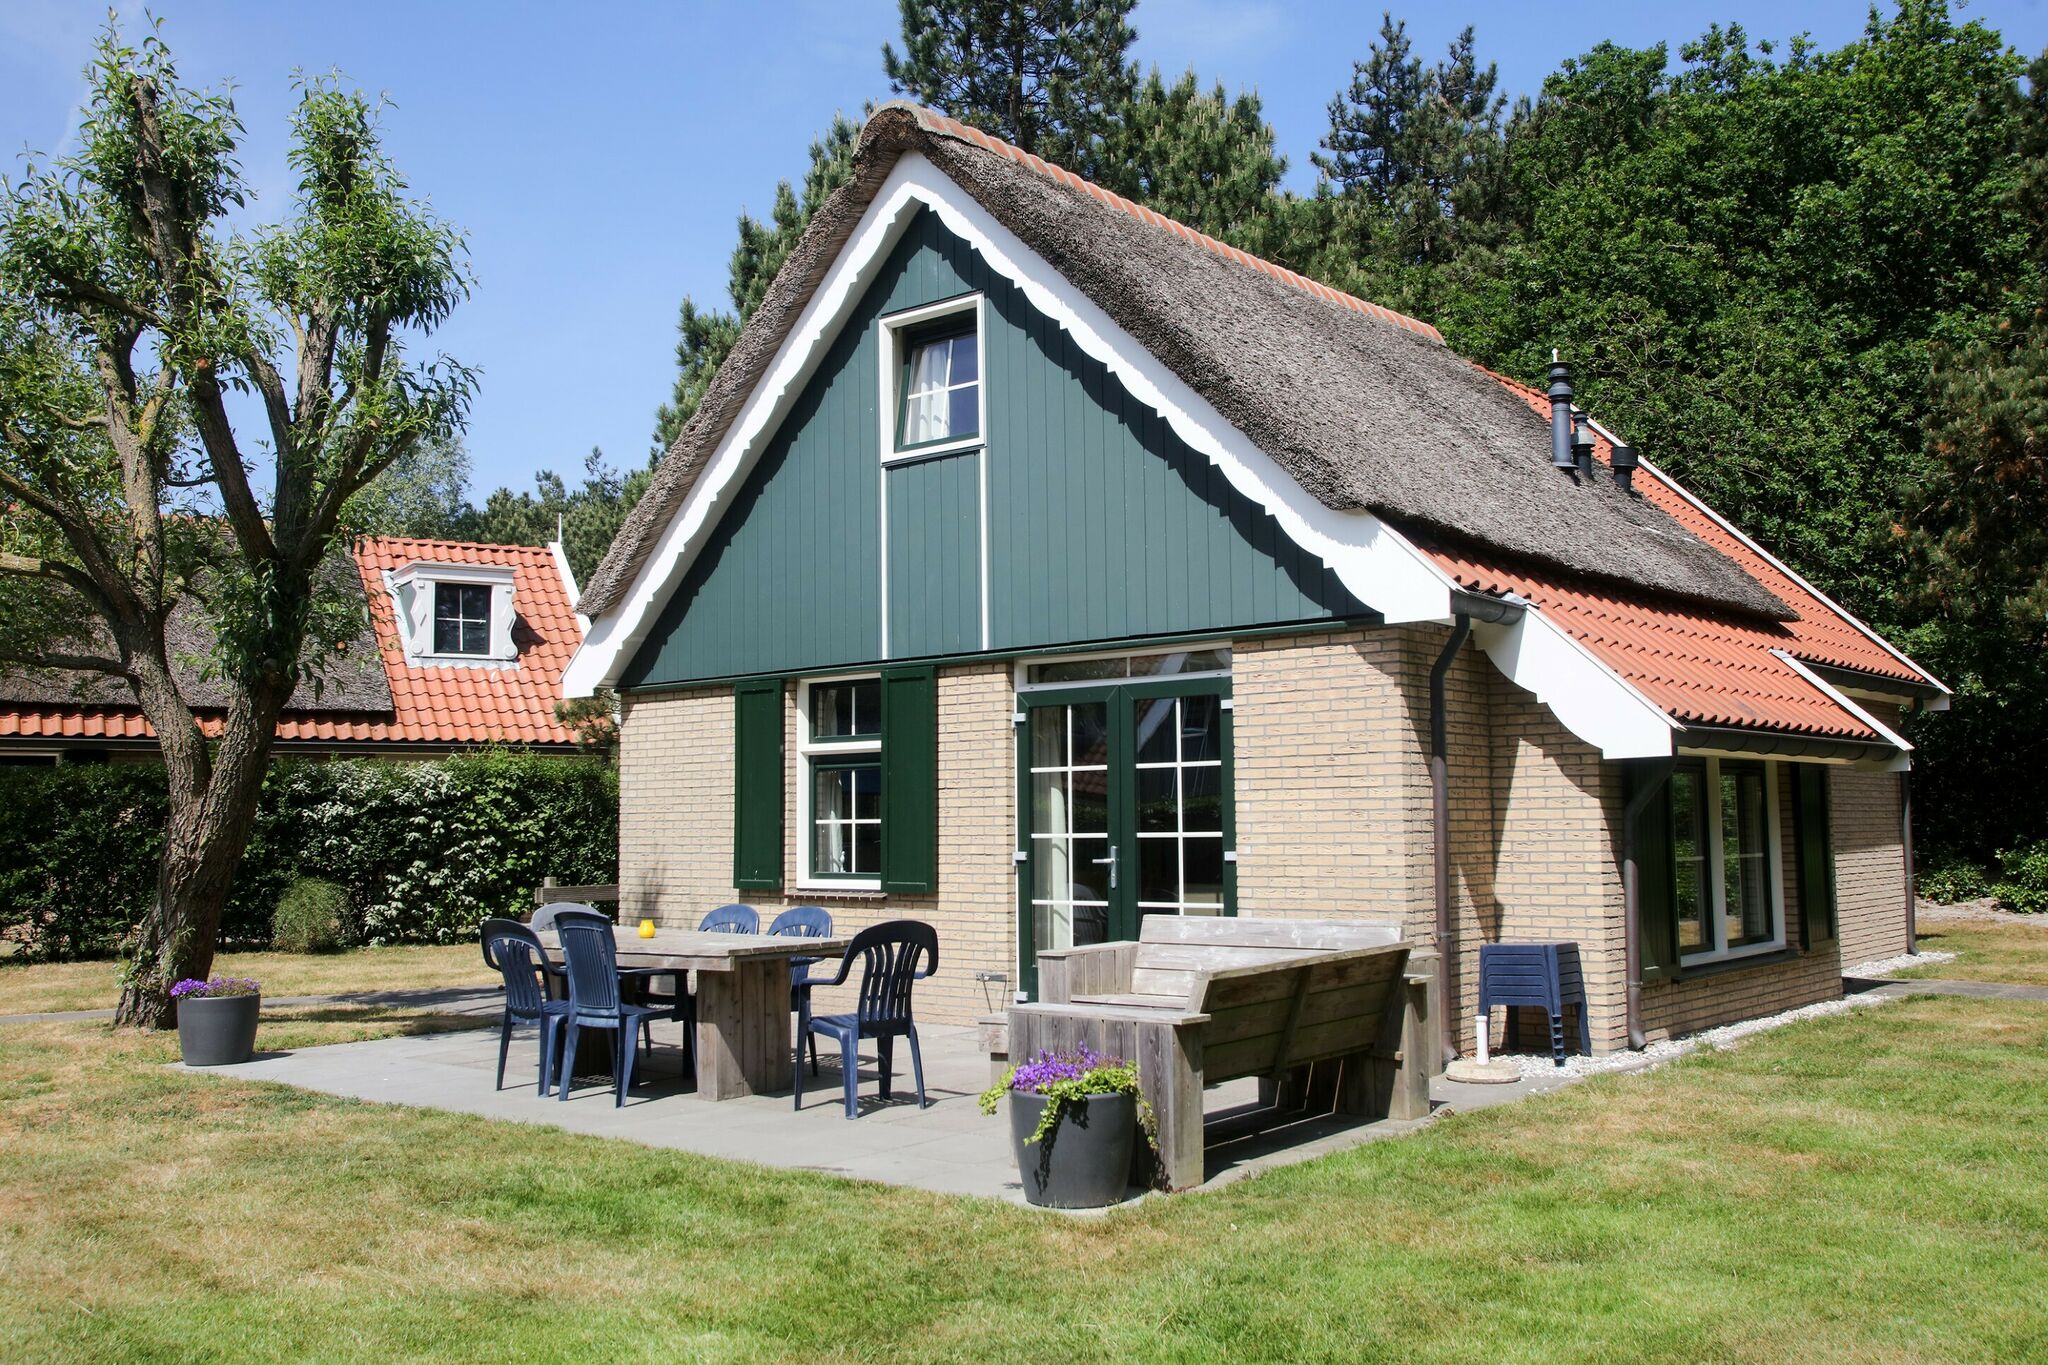 Gerestyld landhuis met afwasmachine, 2 km. van zee op Texel